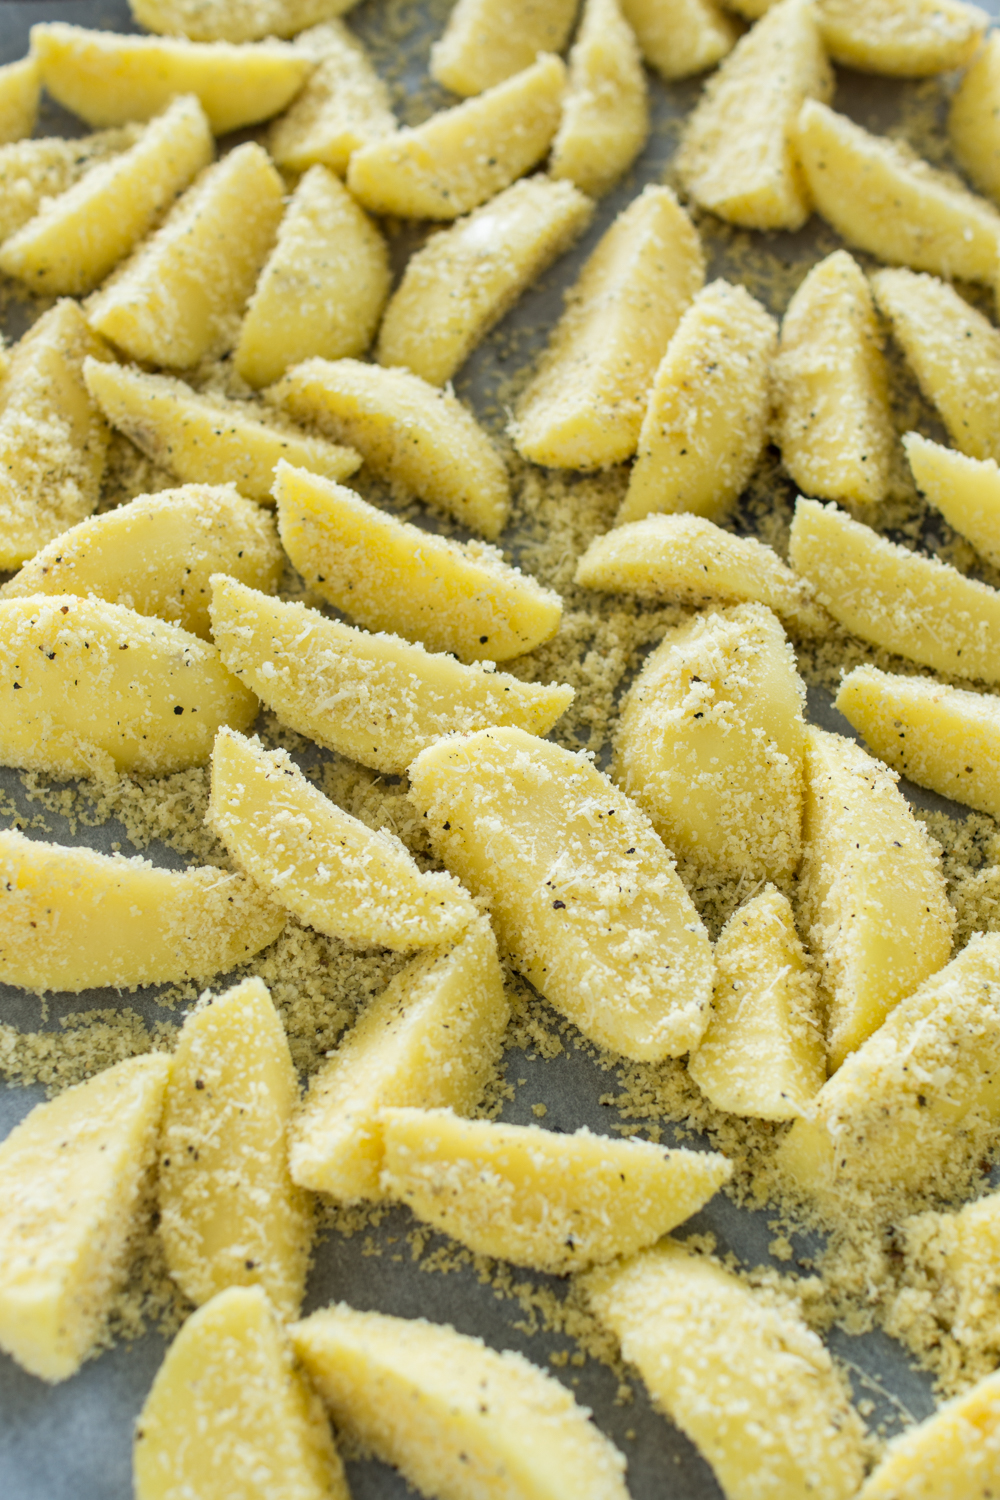 Schnelle Beilage - Parmesan Kartoffeln aus dem Backrohr - schnelles Rezept #vegetarischerezepte